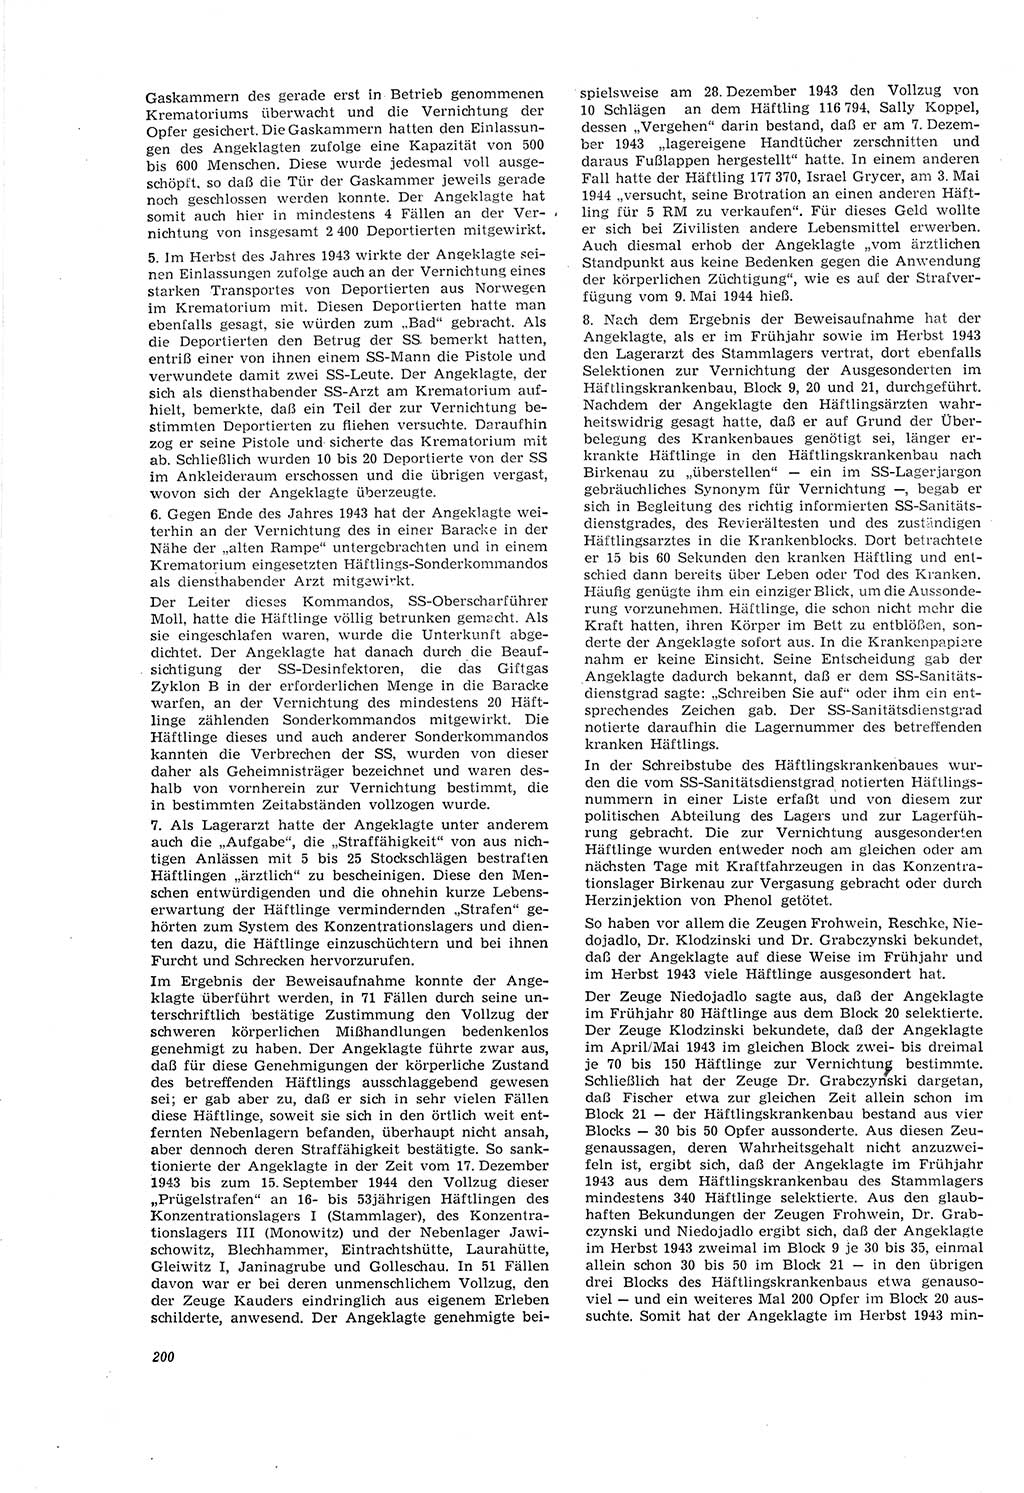 Neue Justiz (NJ), Zeitschrift für Recht und Rechtswissenschaft [Deutsche Demokratische Republik (DDR)], 20. Jahrgang 1966, Seite 200 (NJ DDR 1966, S. 200)